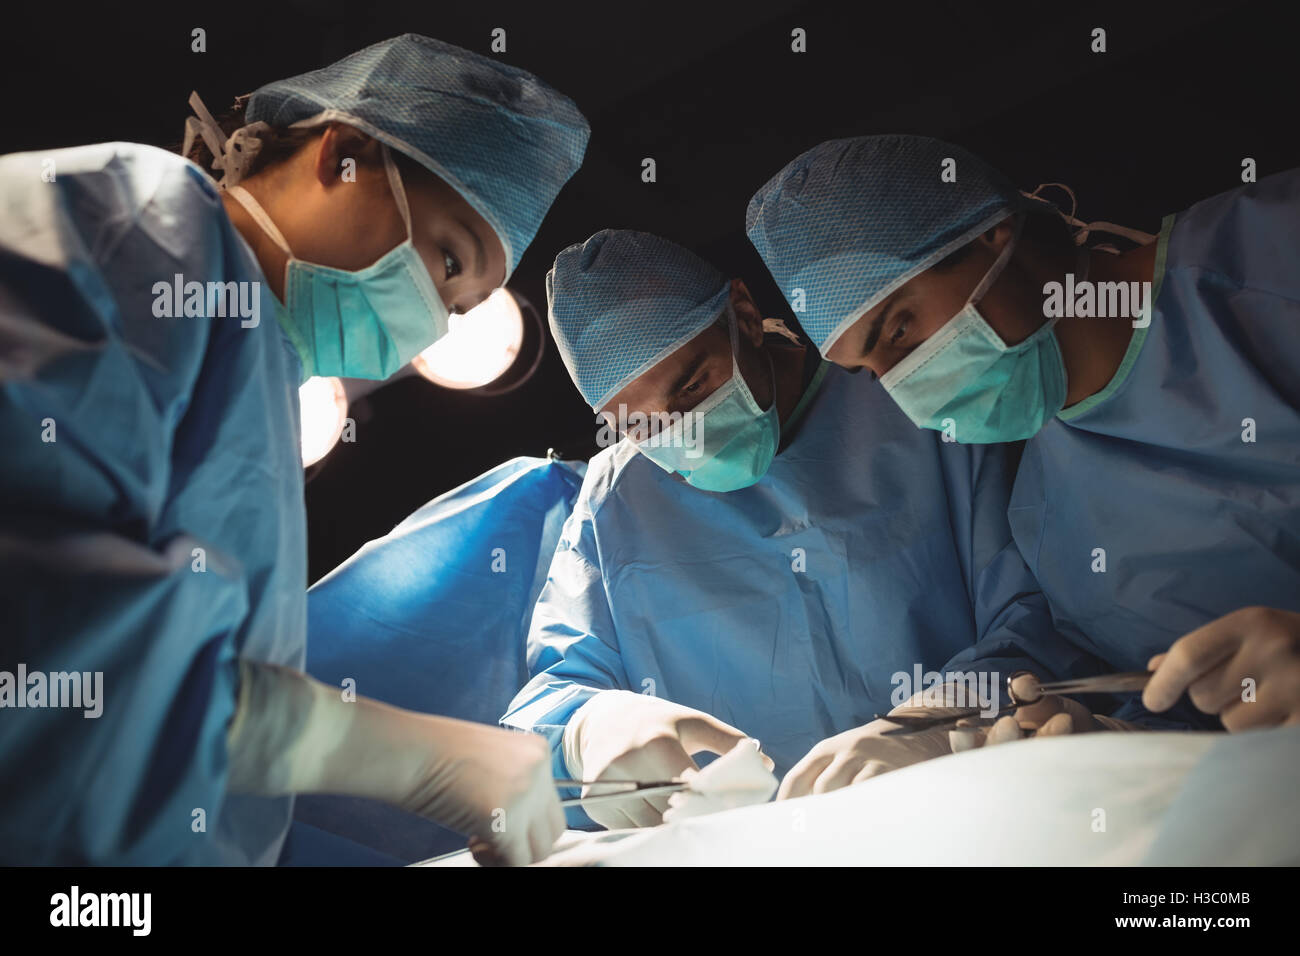 Surgeons performing exploitation En exploitation prix Banque D'Images